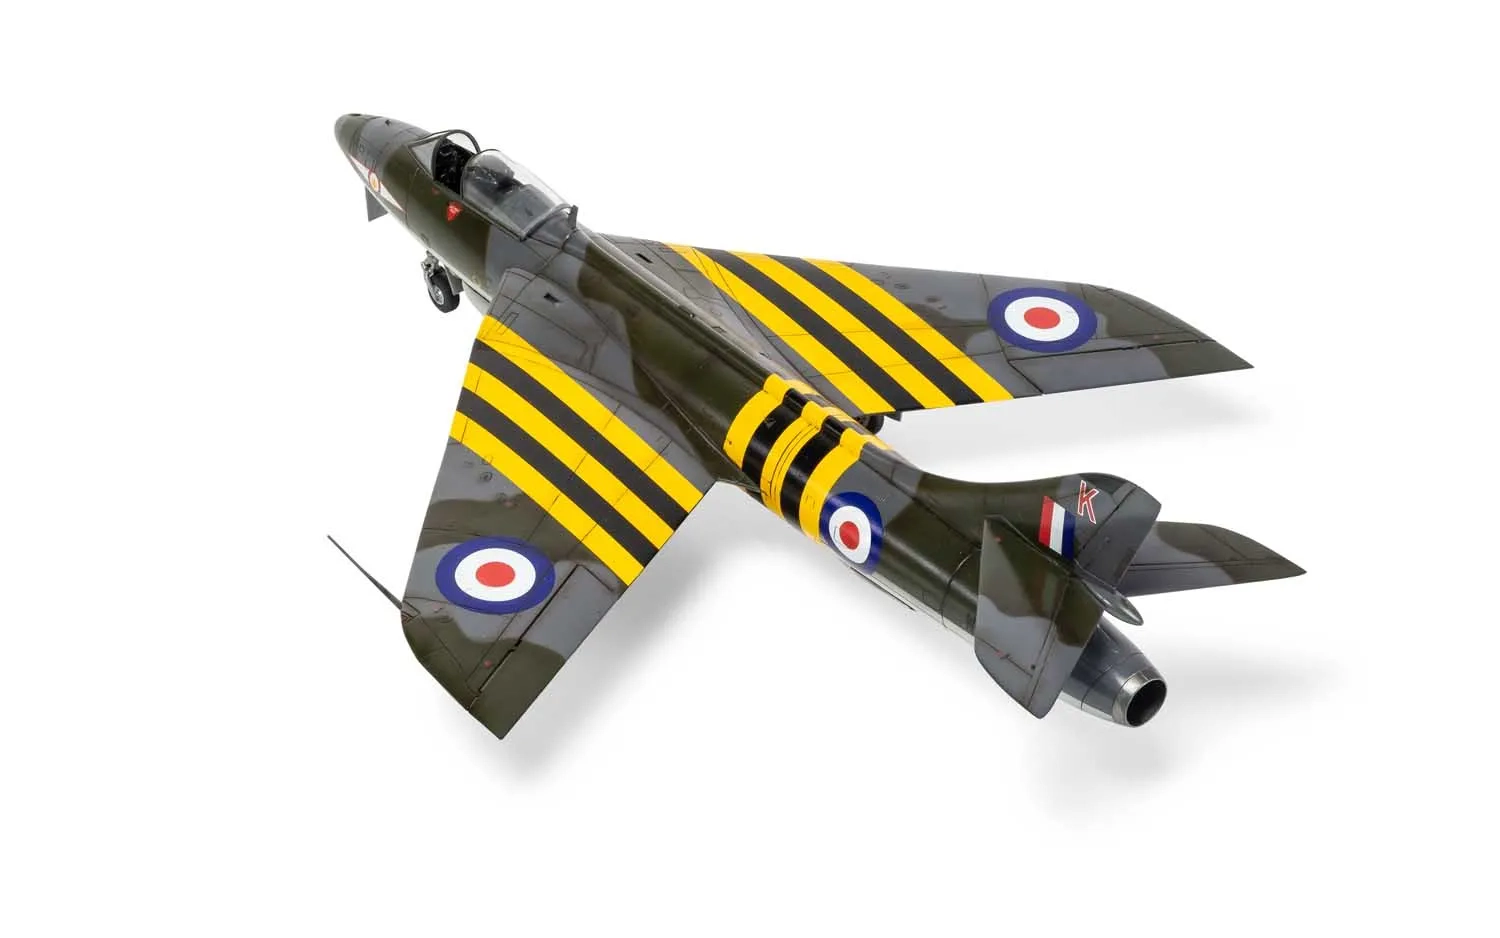 Hawker Hunter F.4/F.5/J.34